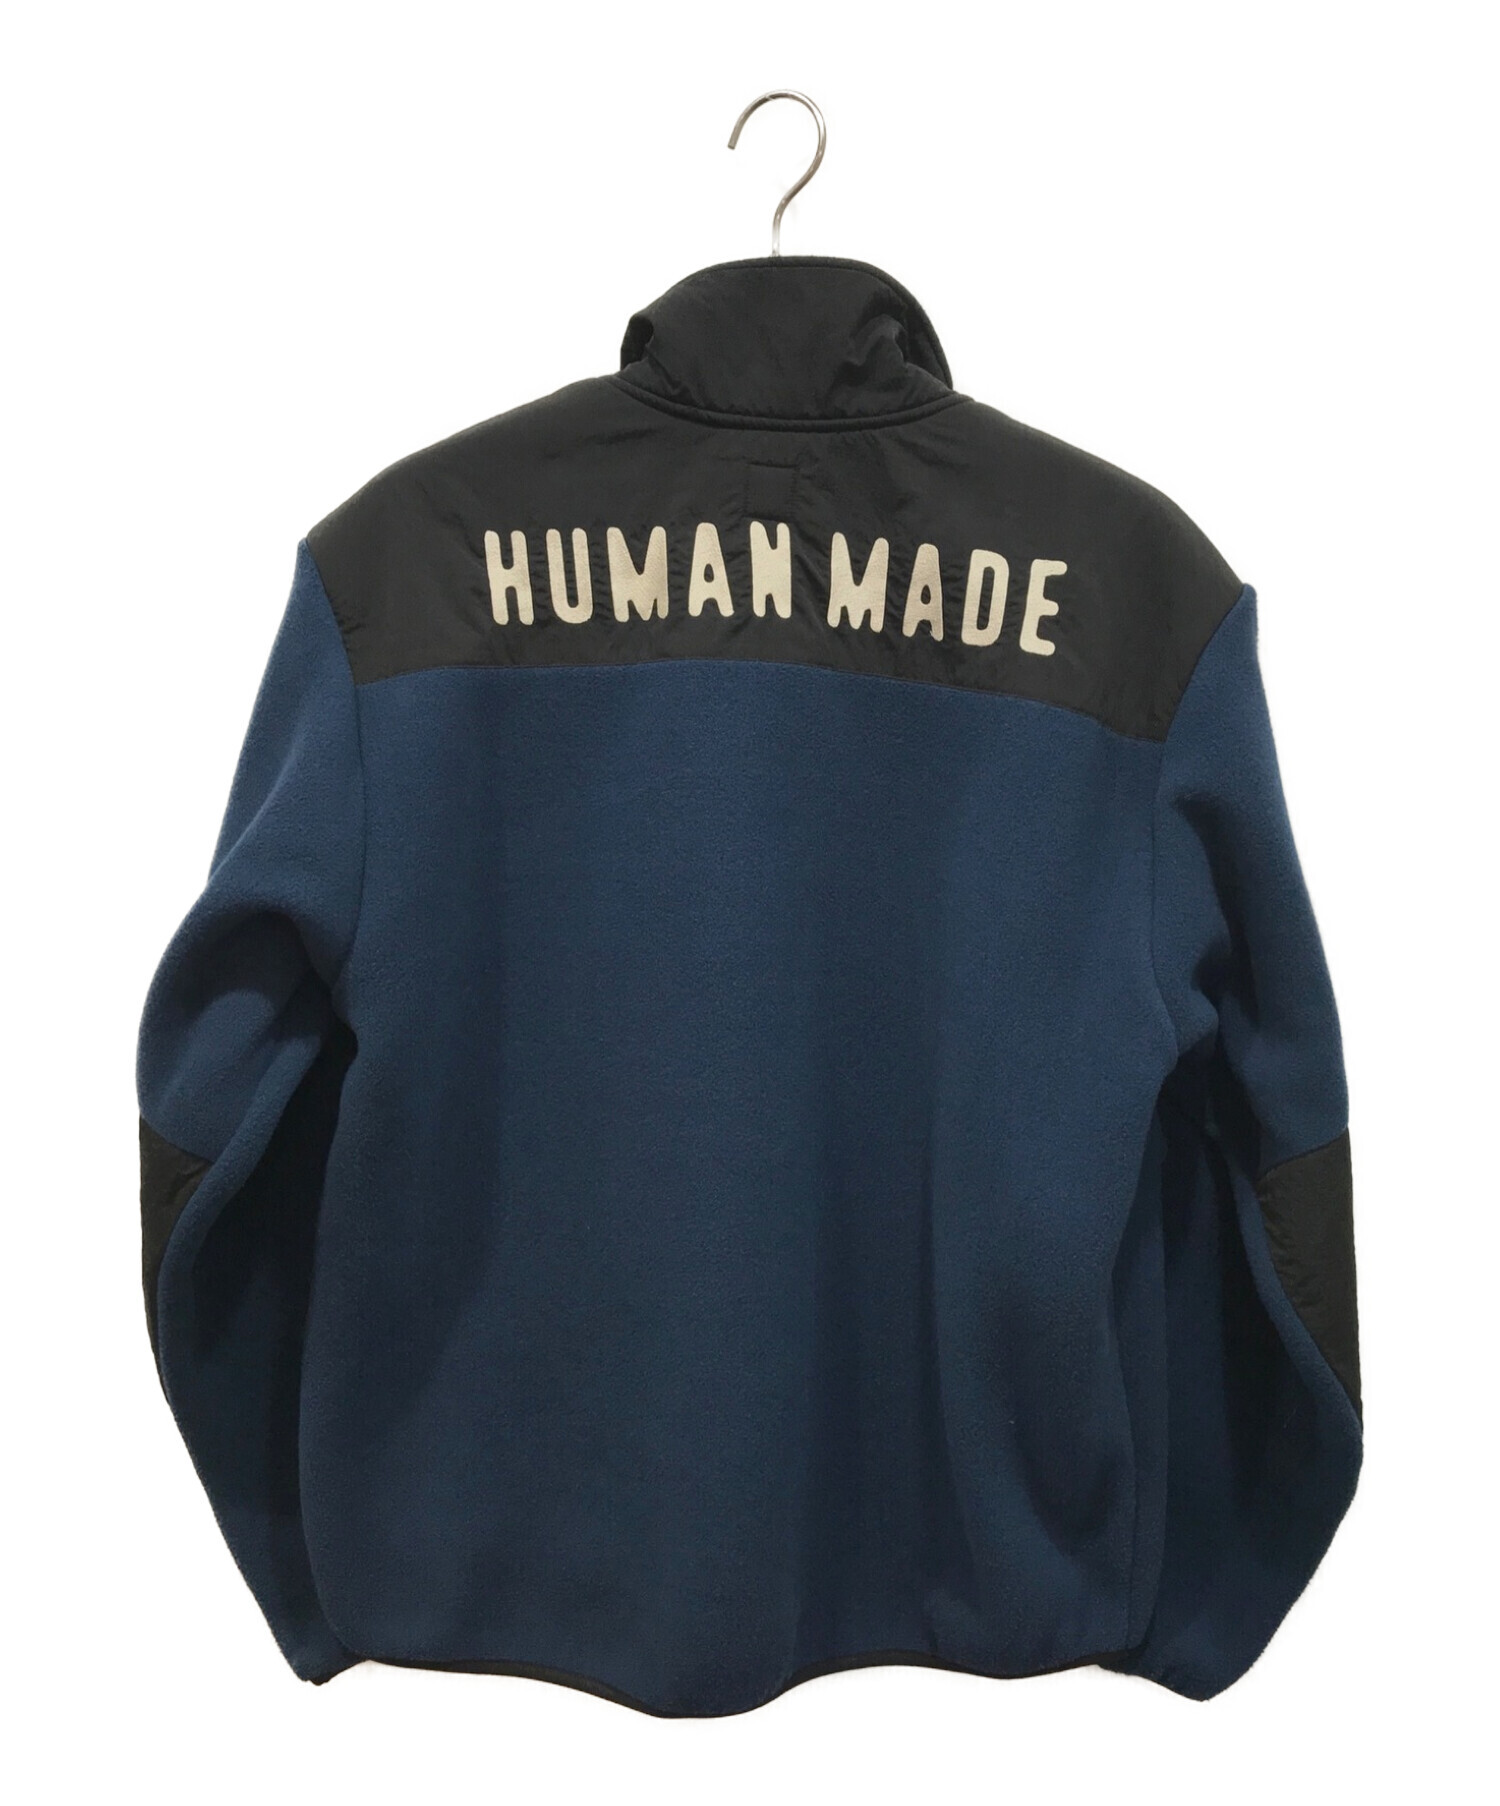 HUMAN MADE (ヒューマンメイド) フリースジャケット ネイビー サイズ:M